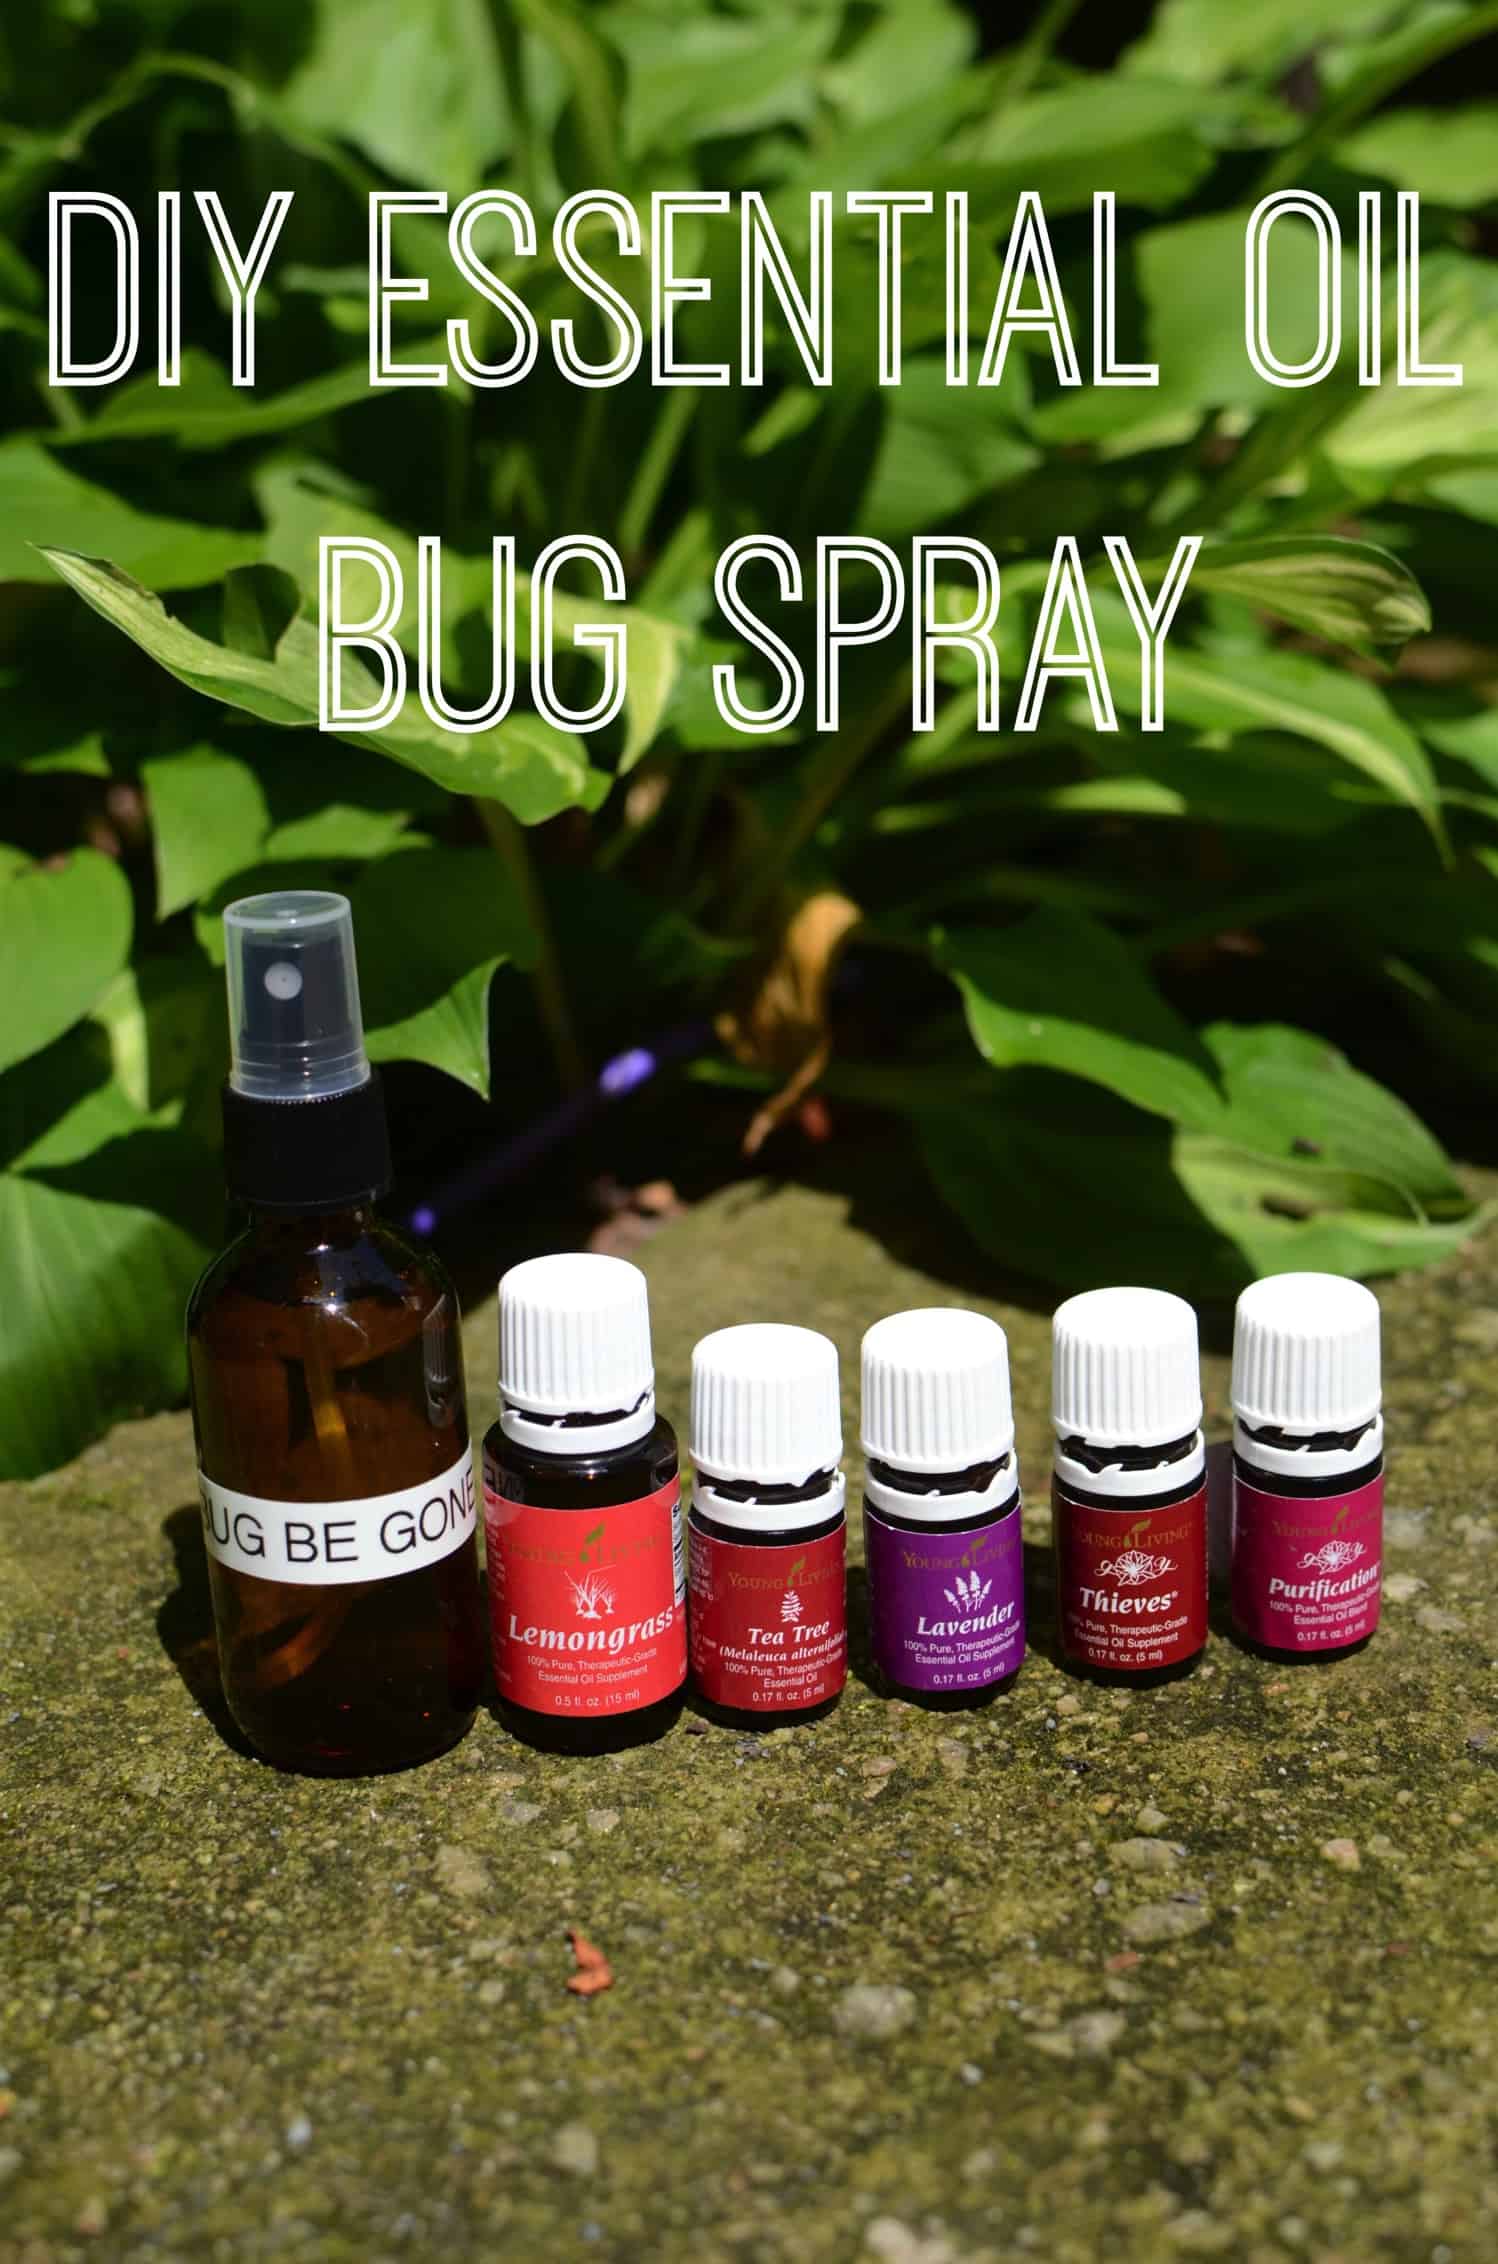 Diy essential oils bug spray